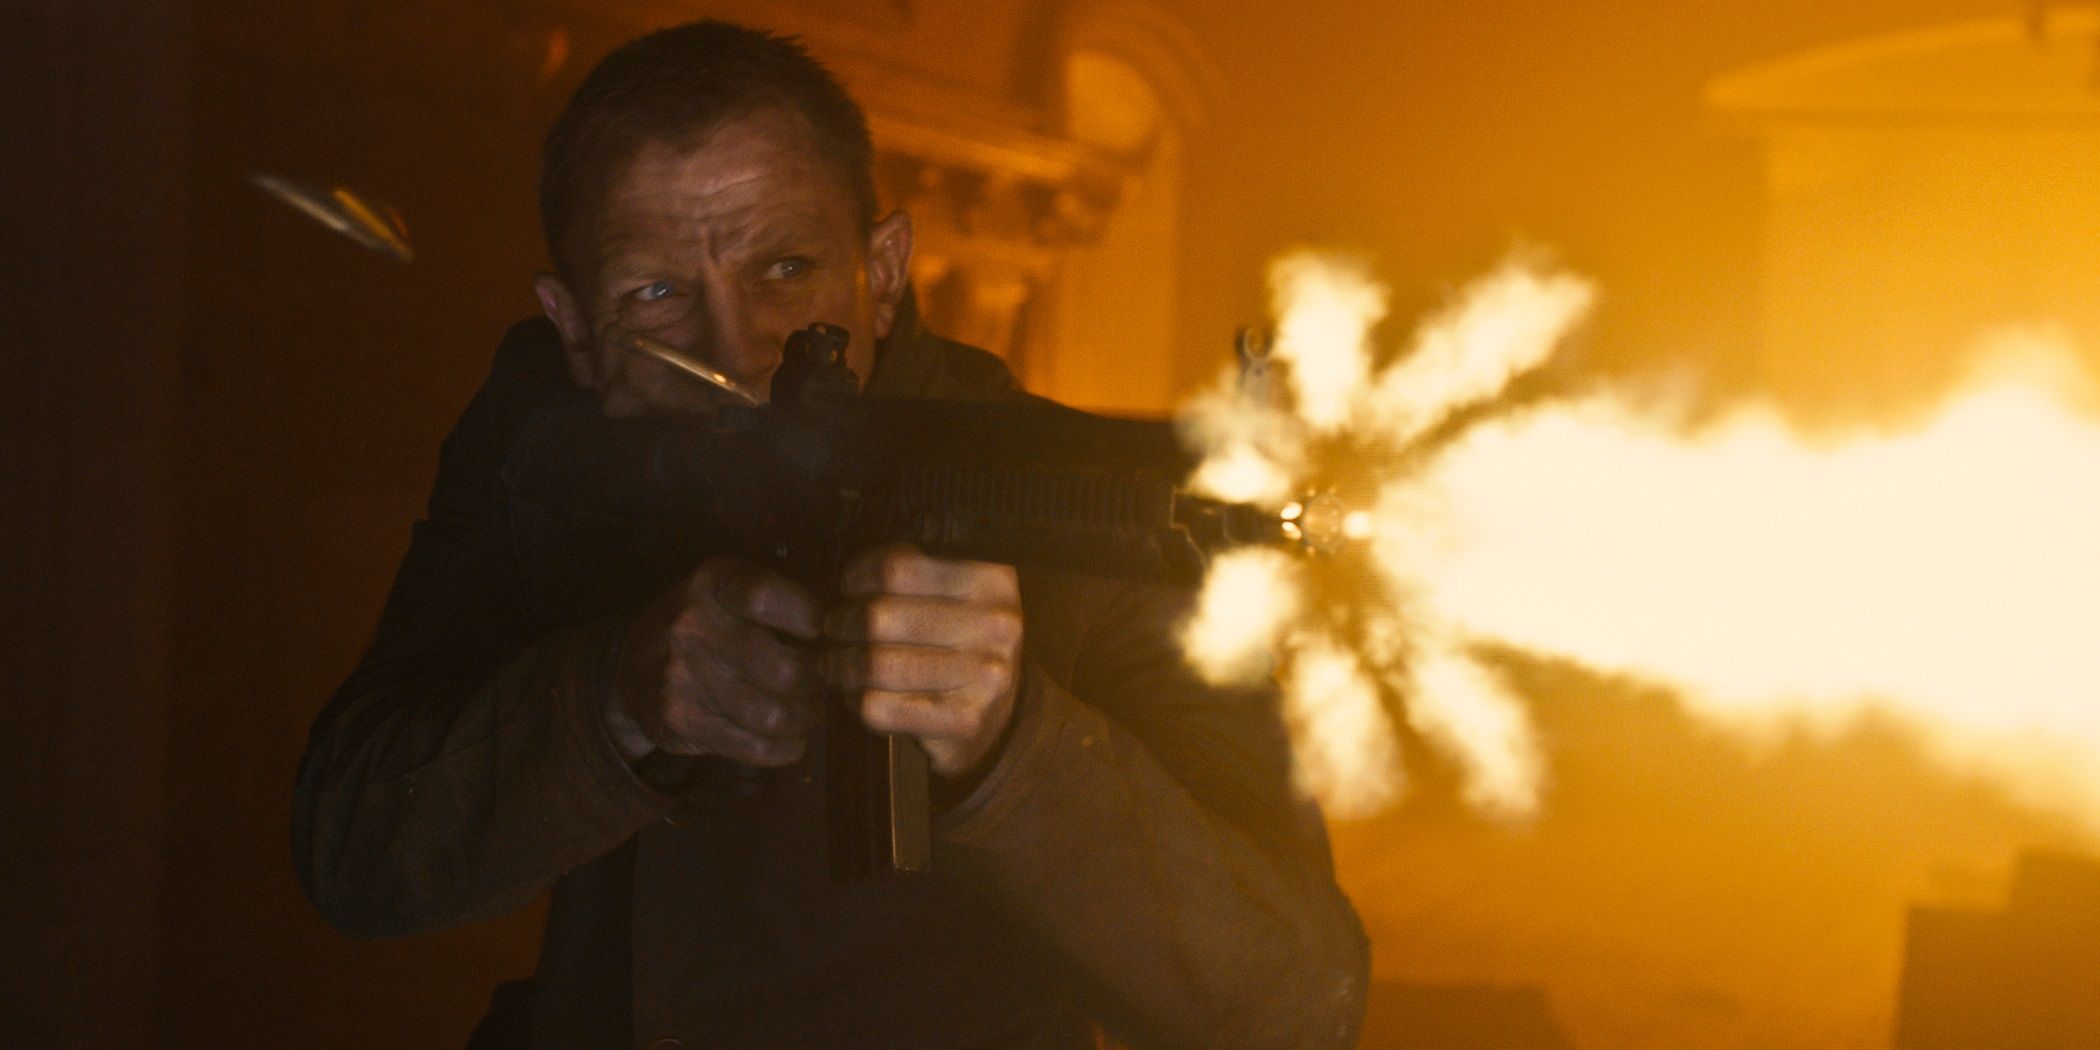 Daniel Craig as James Bond firing a machine gun in Skyfall